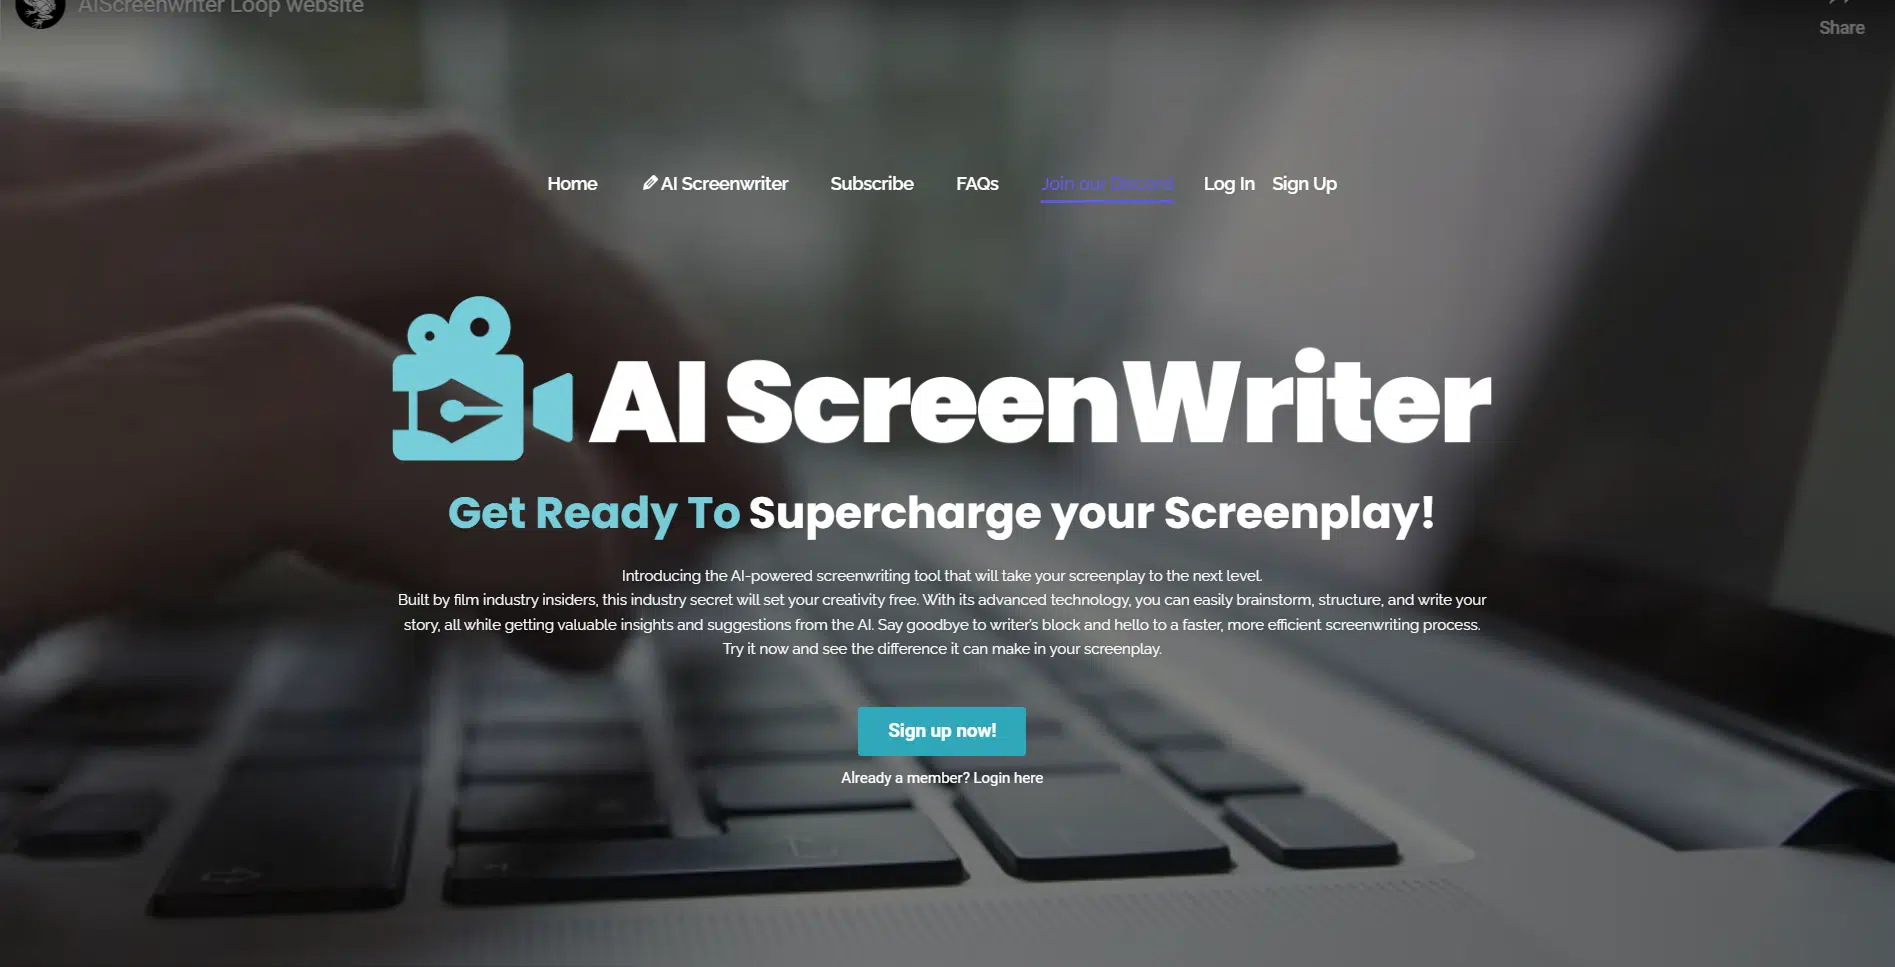 AI Screenwriterwebsite picture